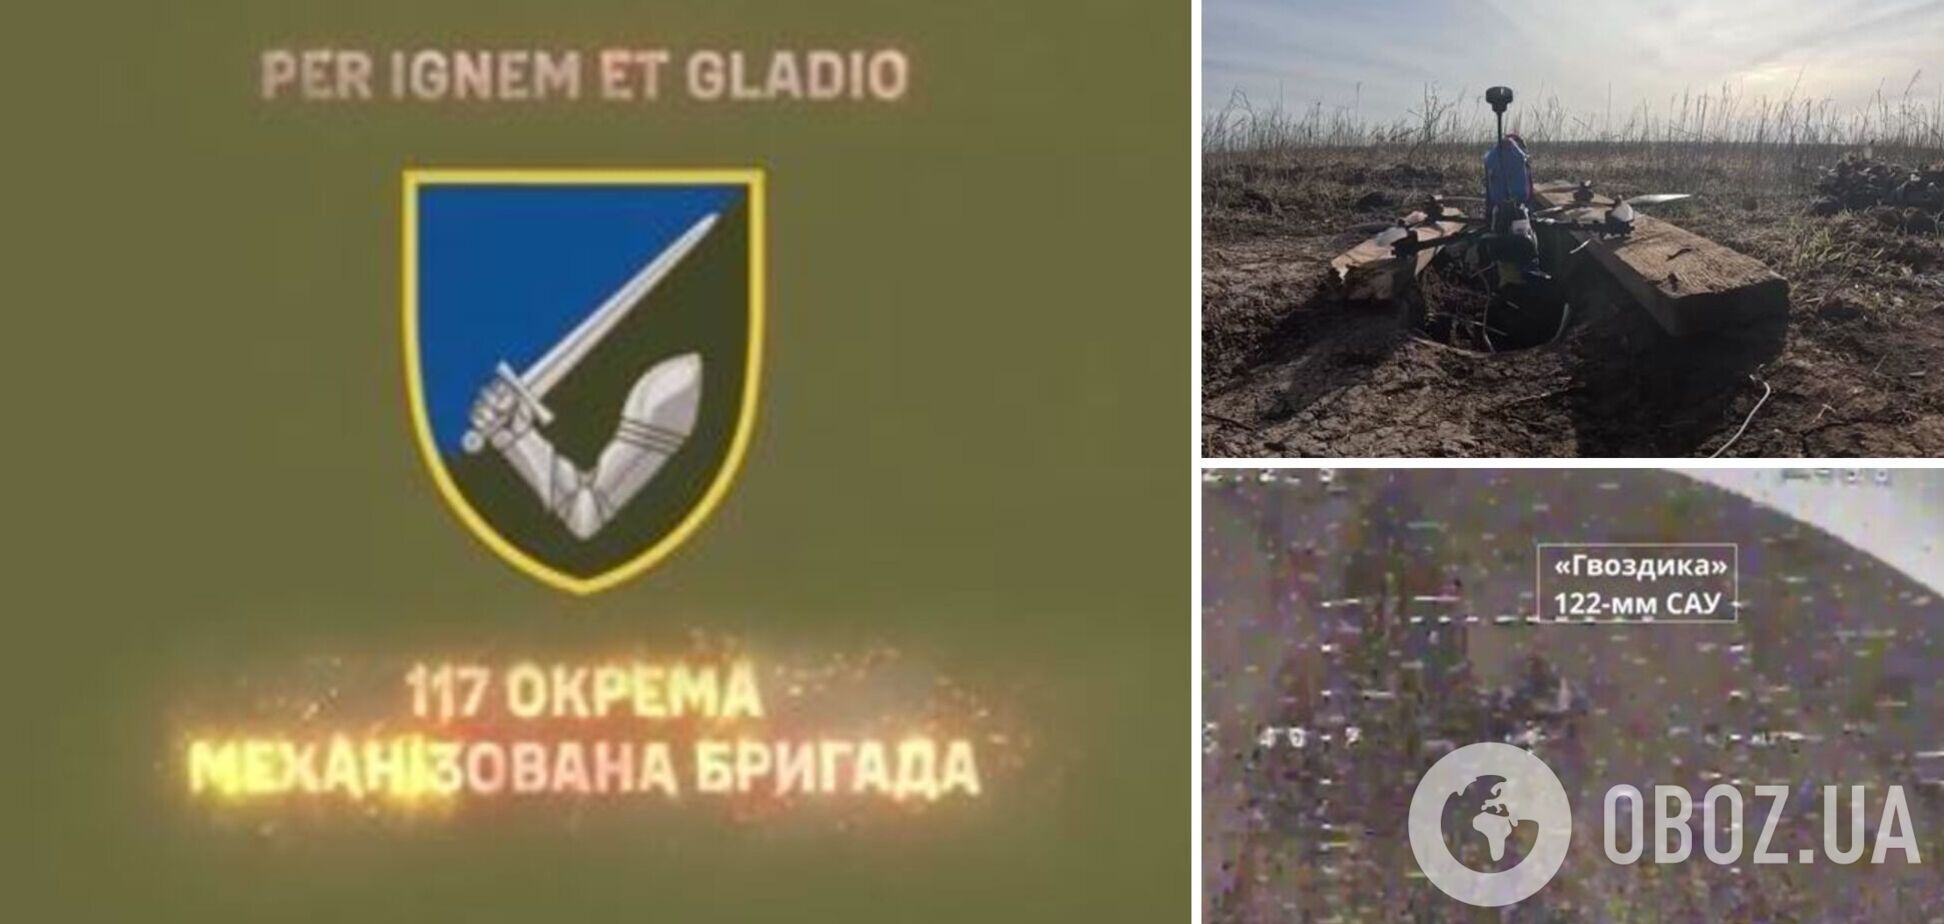 Працюють FPV-дрони: в ЗСУ показали знищення російських САУ 'Гвоздика' і БМД-4. Відео